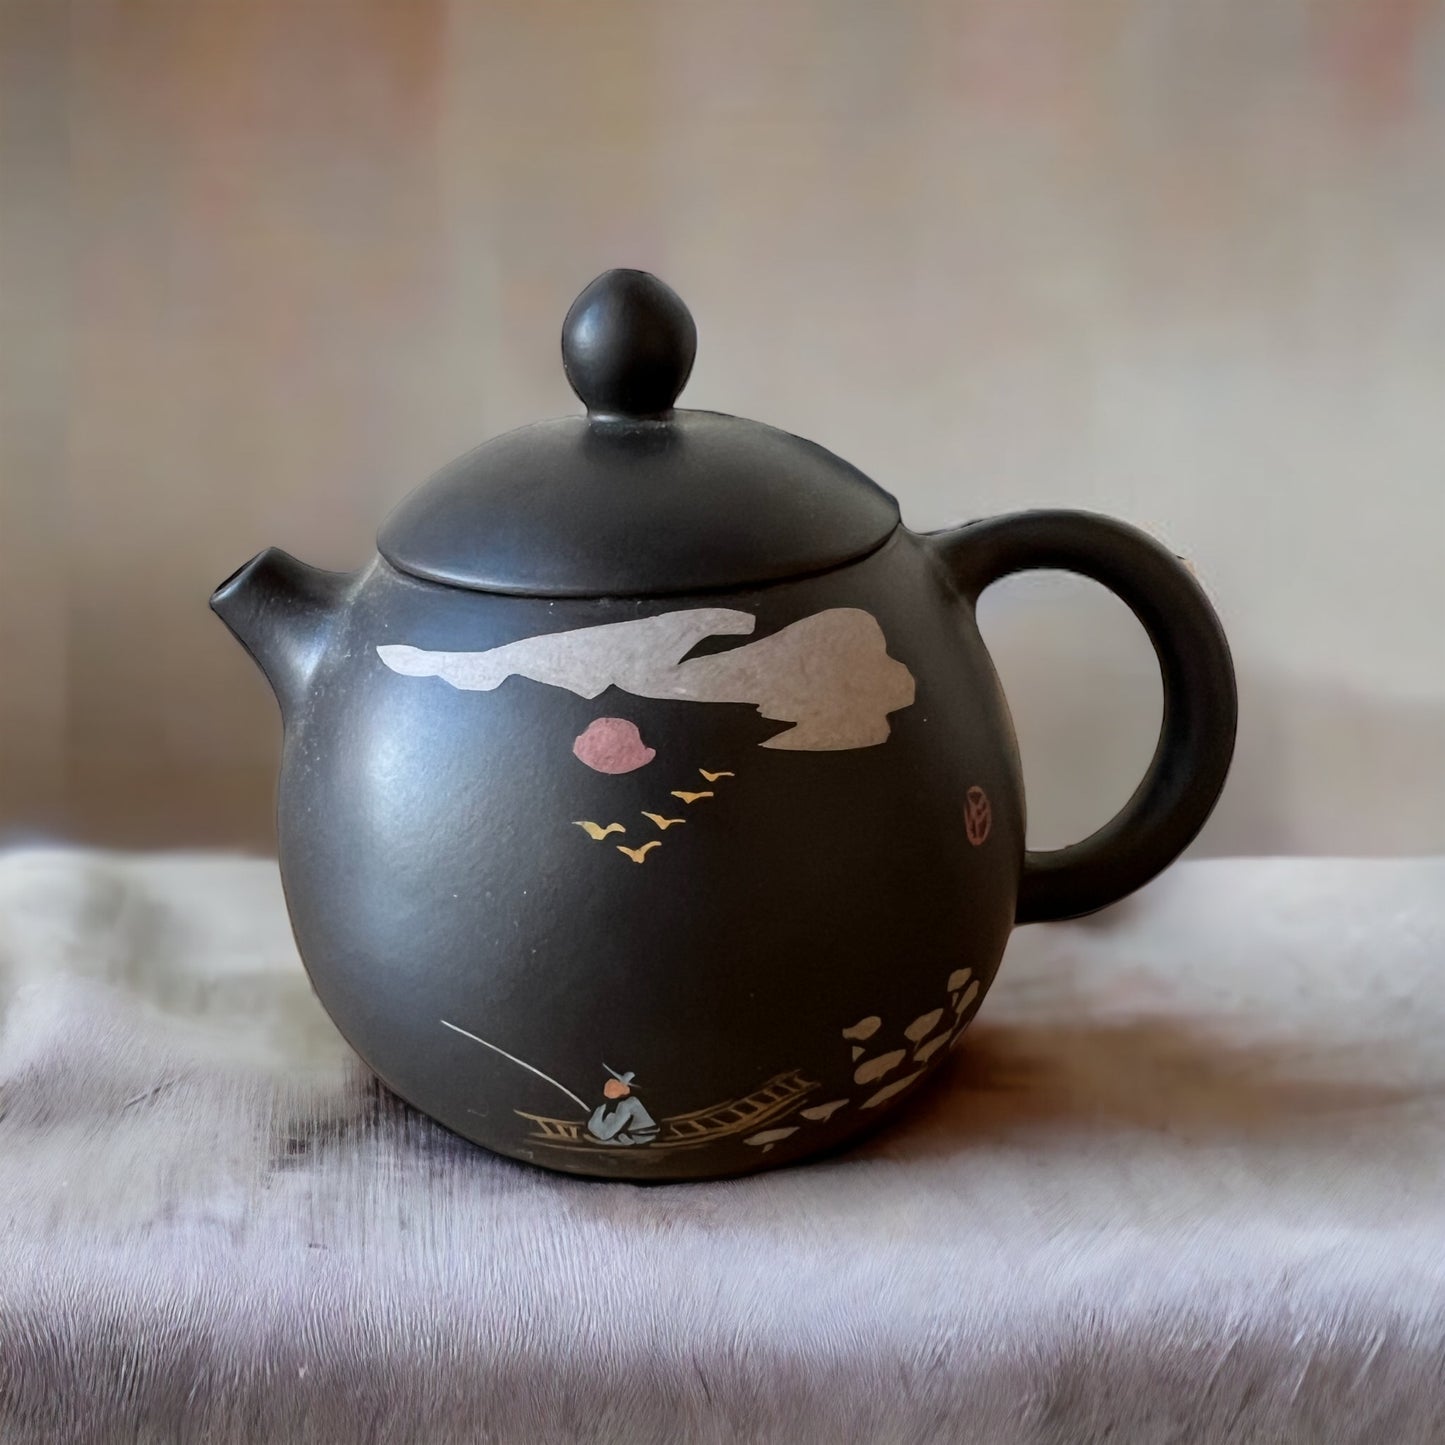 Jian Shui Clay “Zhu Qu” Teapot By Hong Xue Zhi